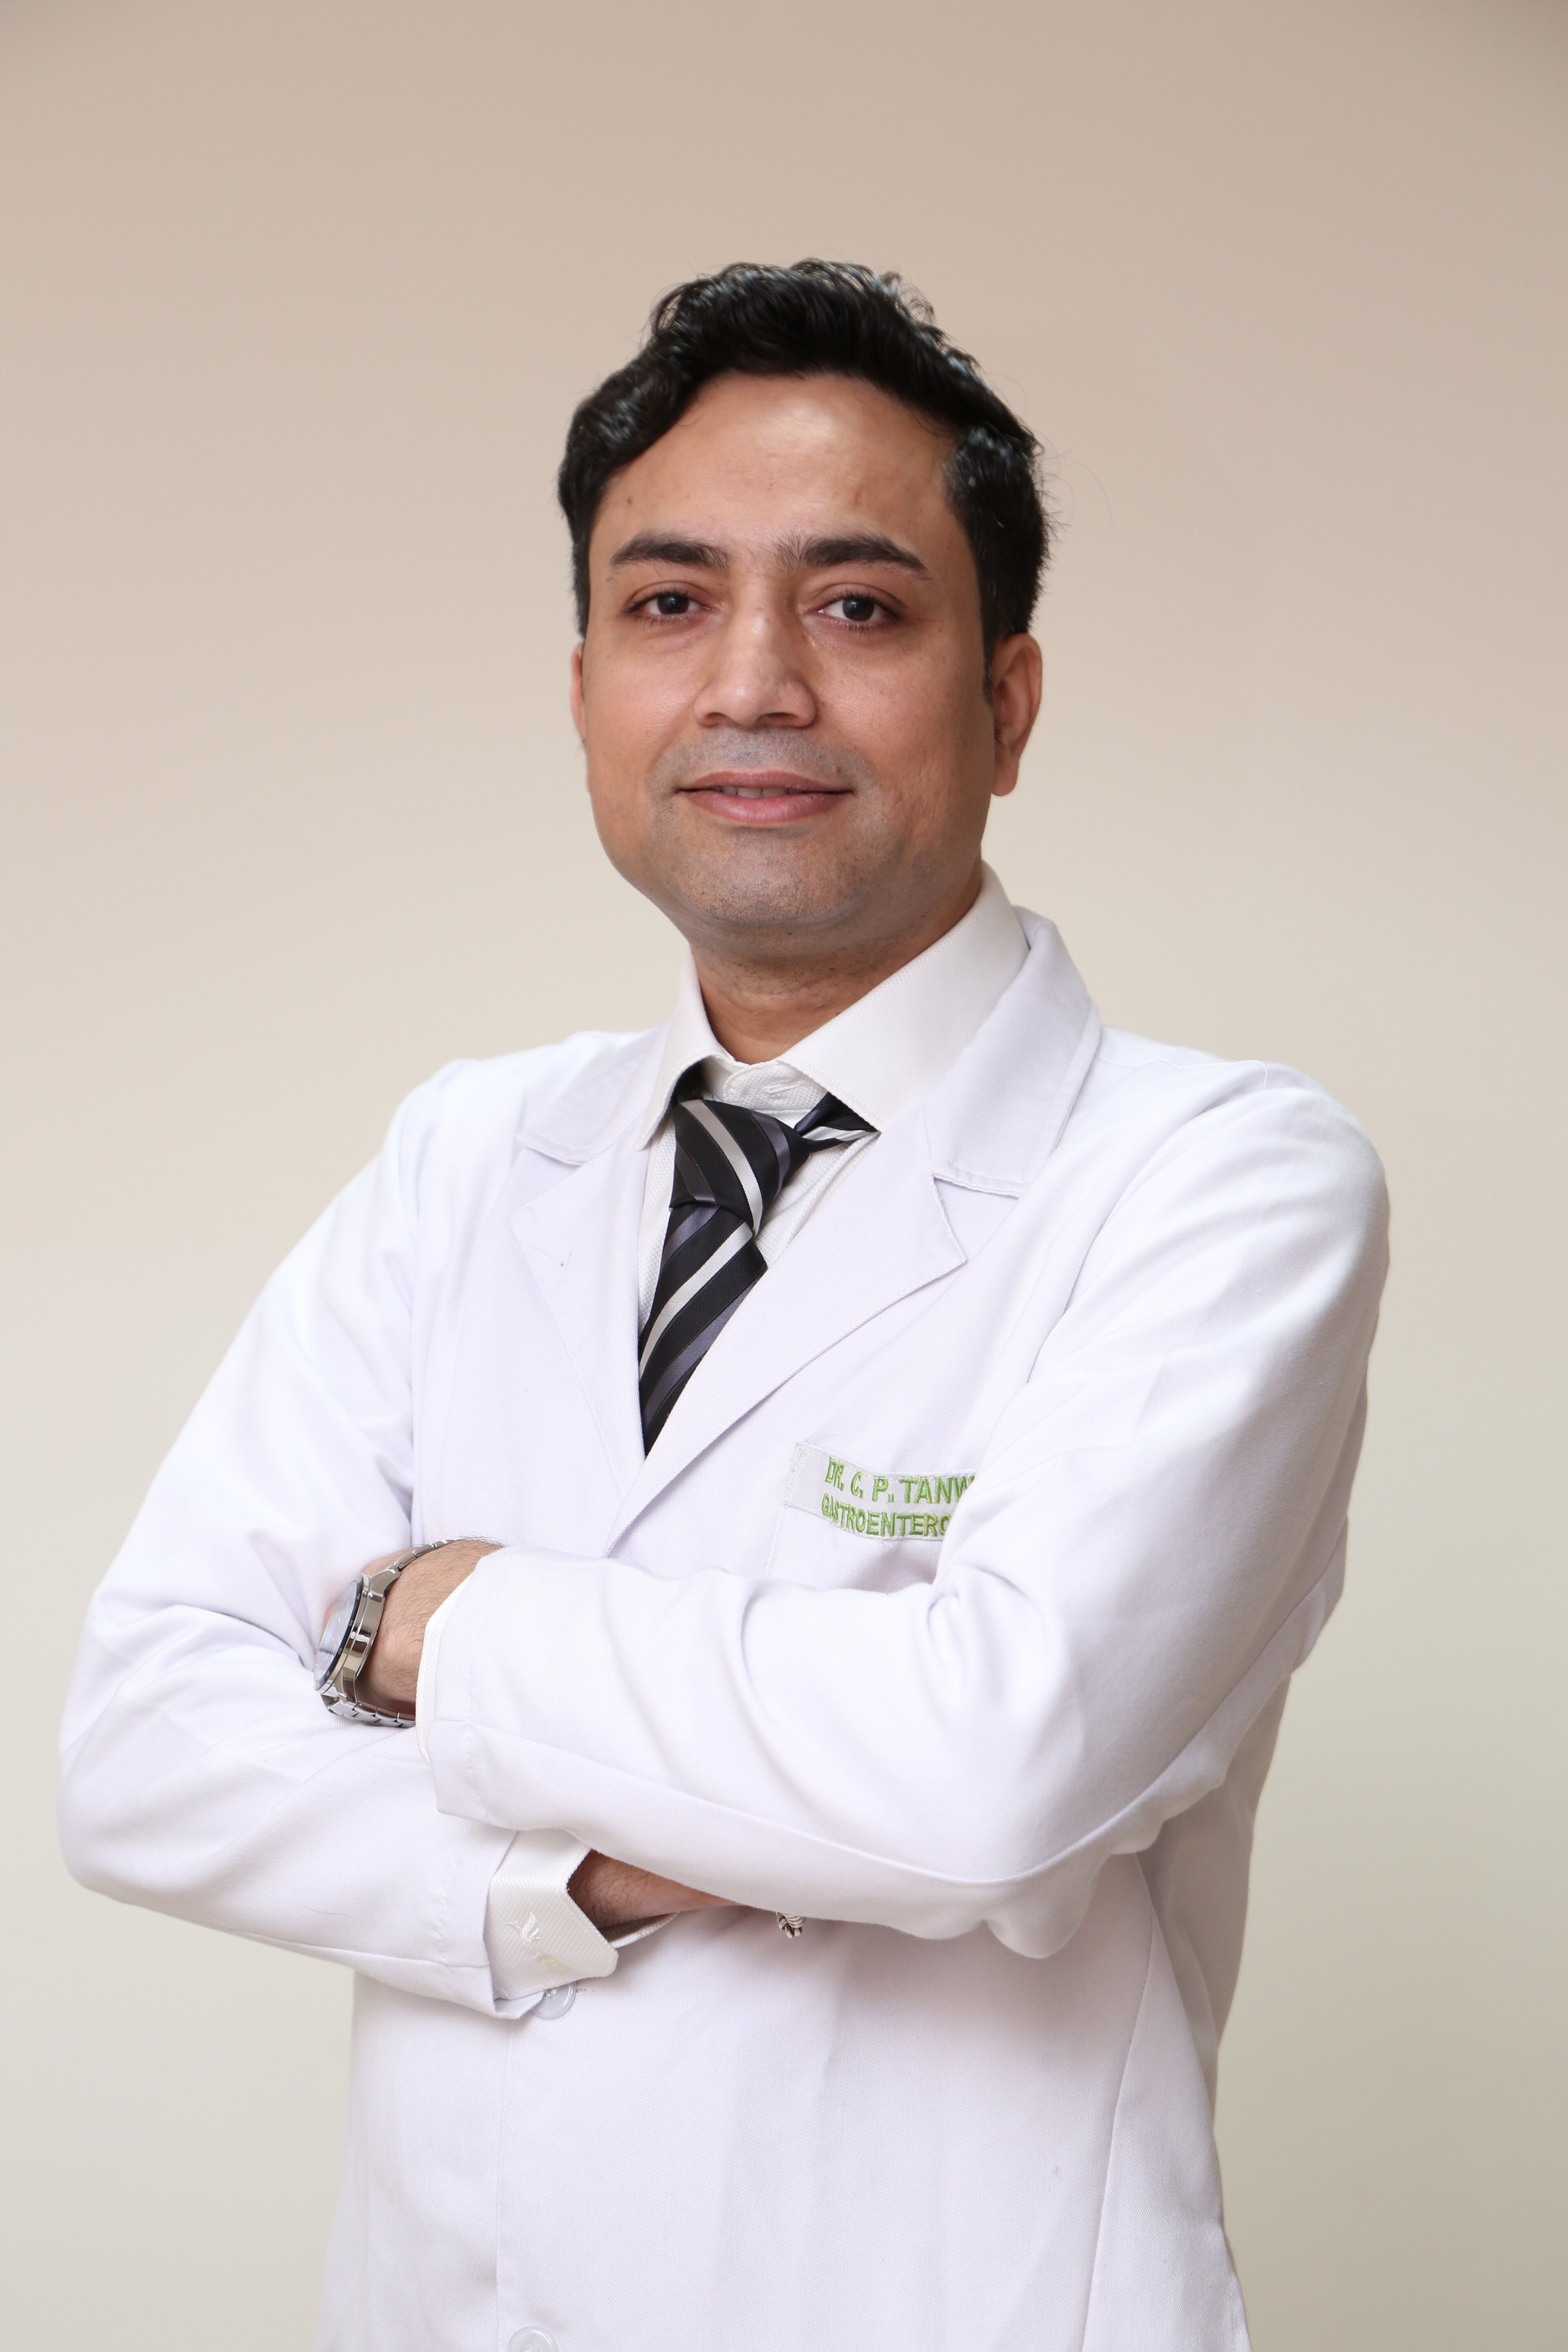 Chandra Prakash Tanwar博士